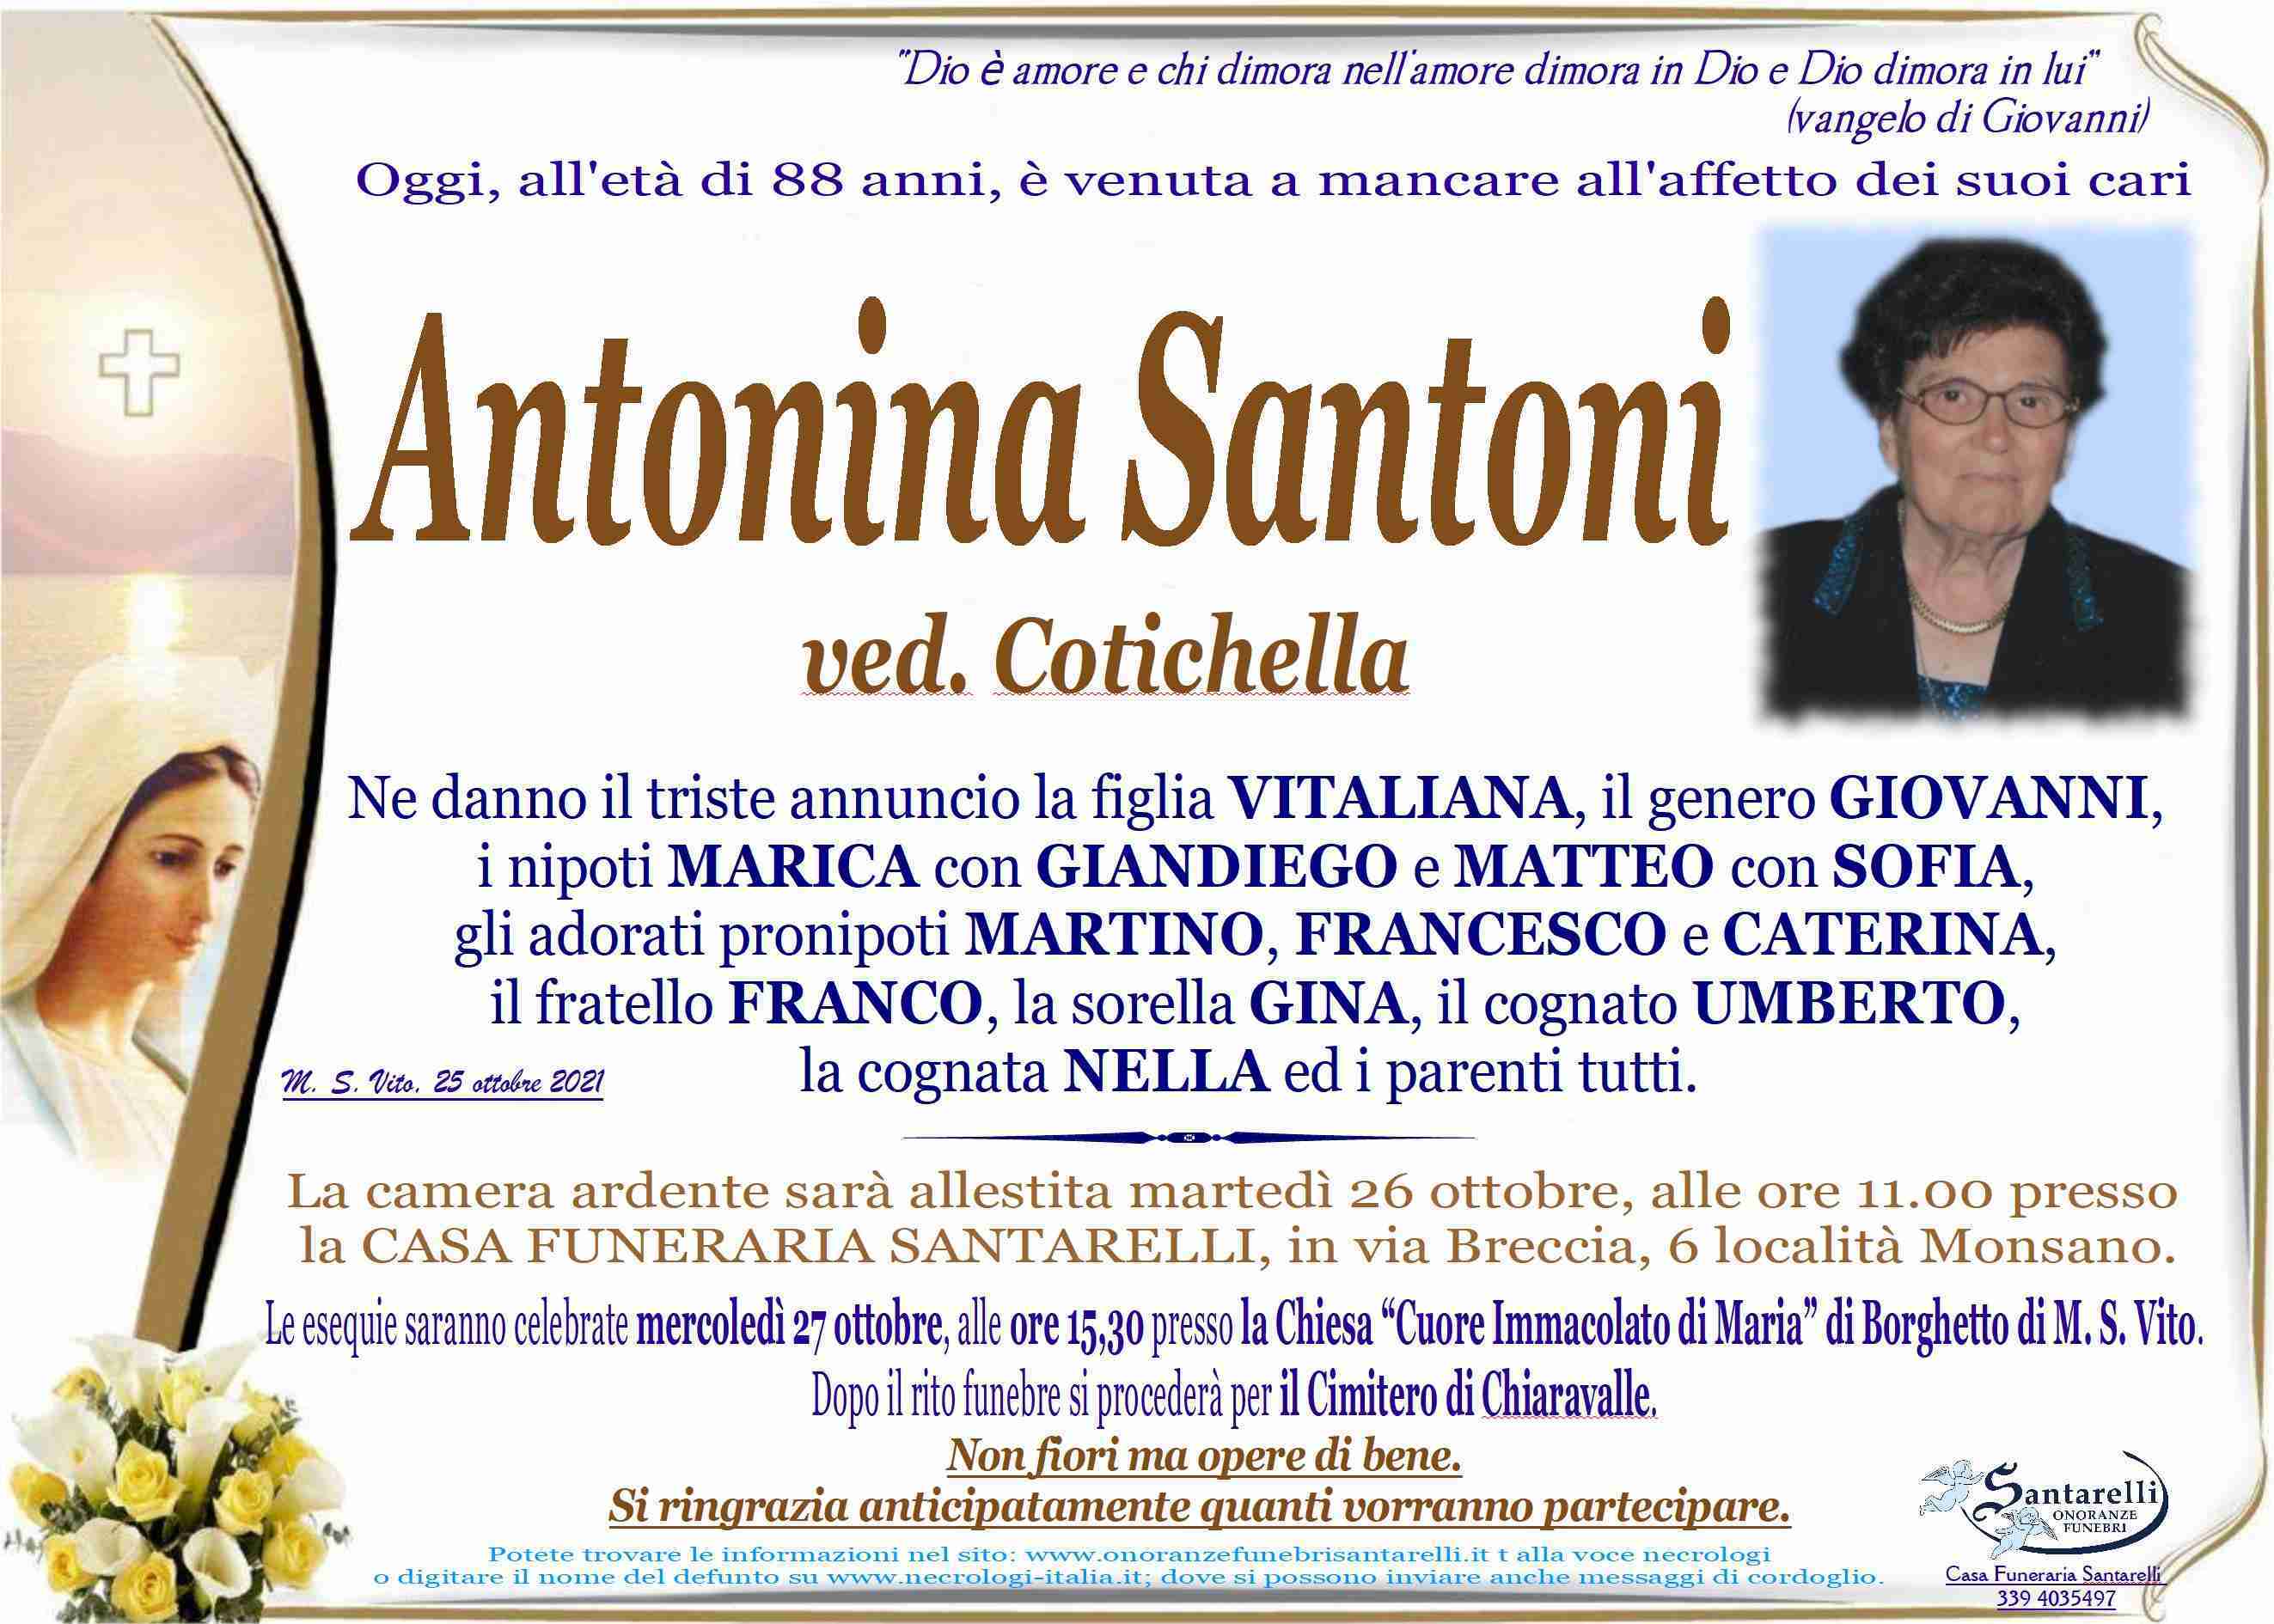 Antonina Santoni